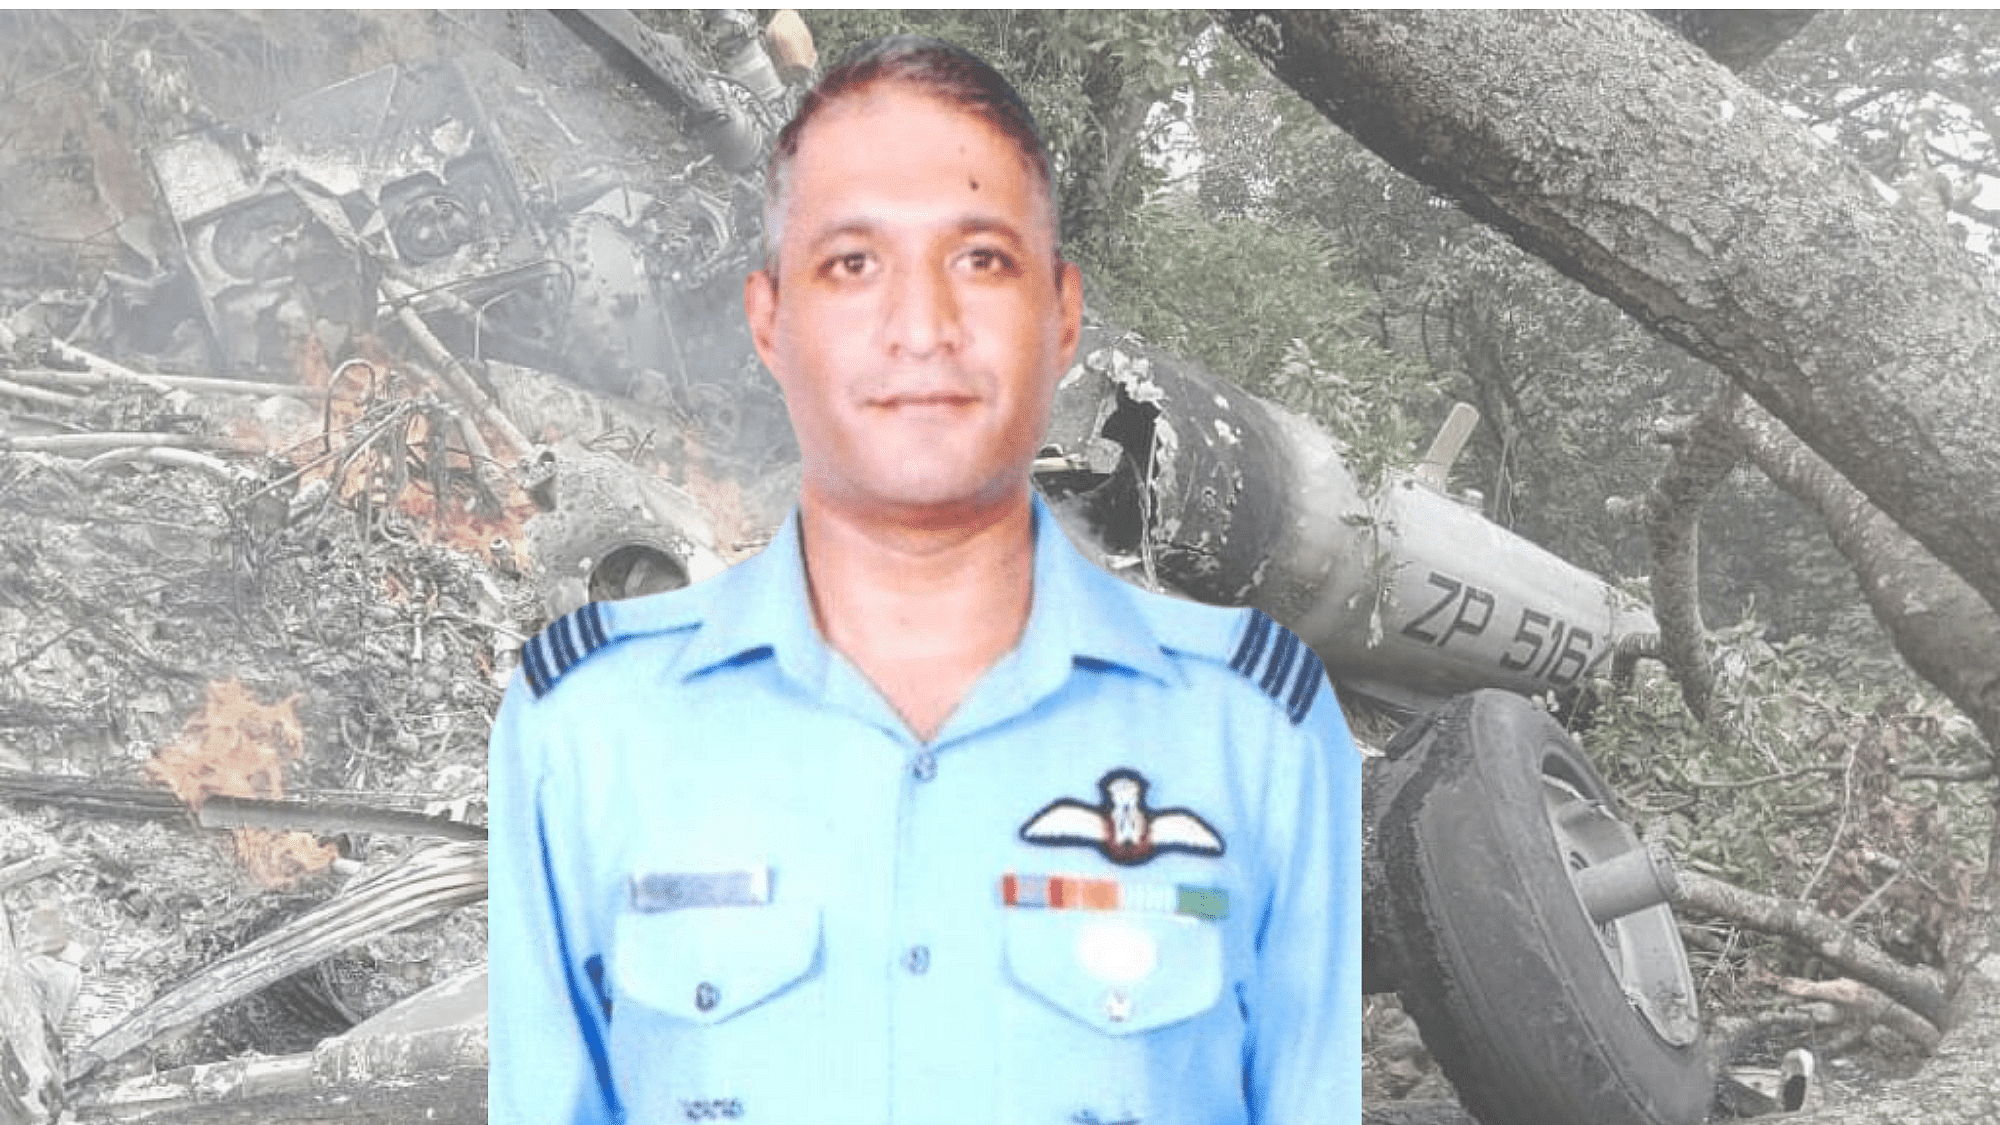 <div class="paragraphs"><p><br>8 दिसंबर को हुए इस हादसे में भारतीय वायुसेना के ग्रुप कैप्टन वरुण सिंह घायल हो गए थे.</p></div>